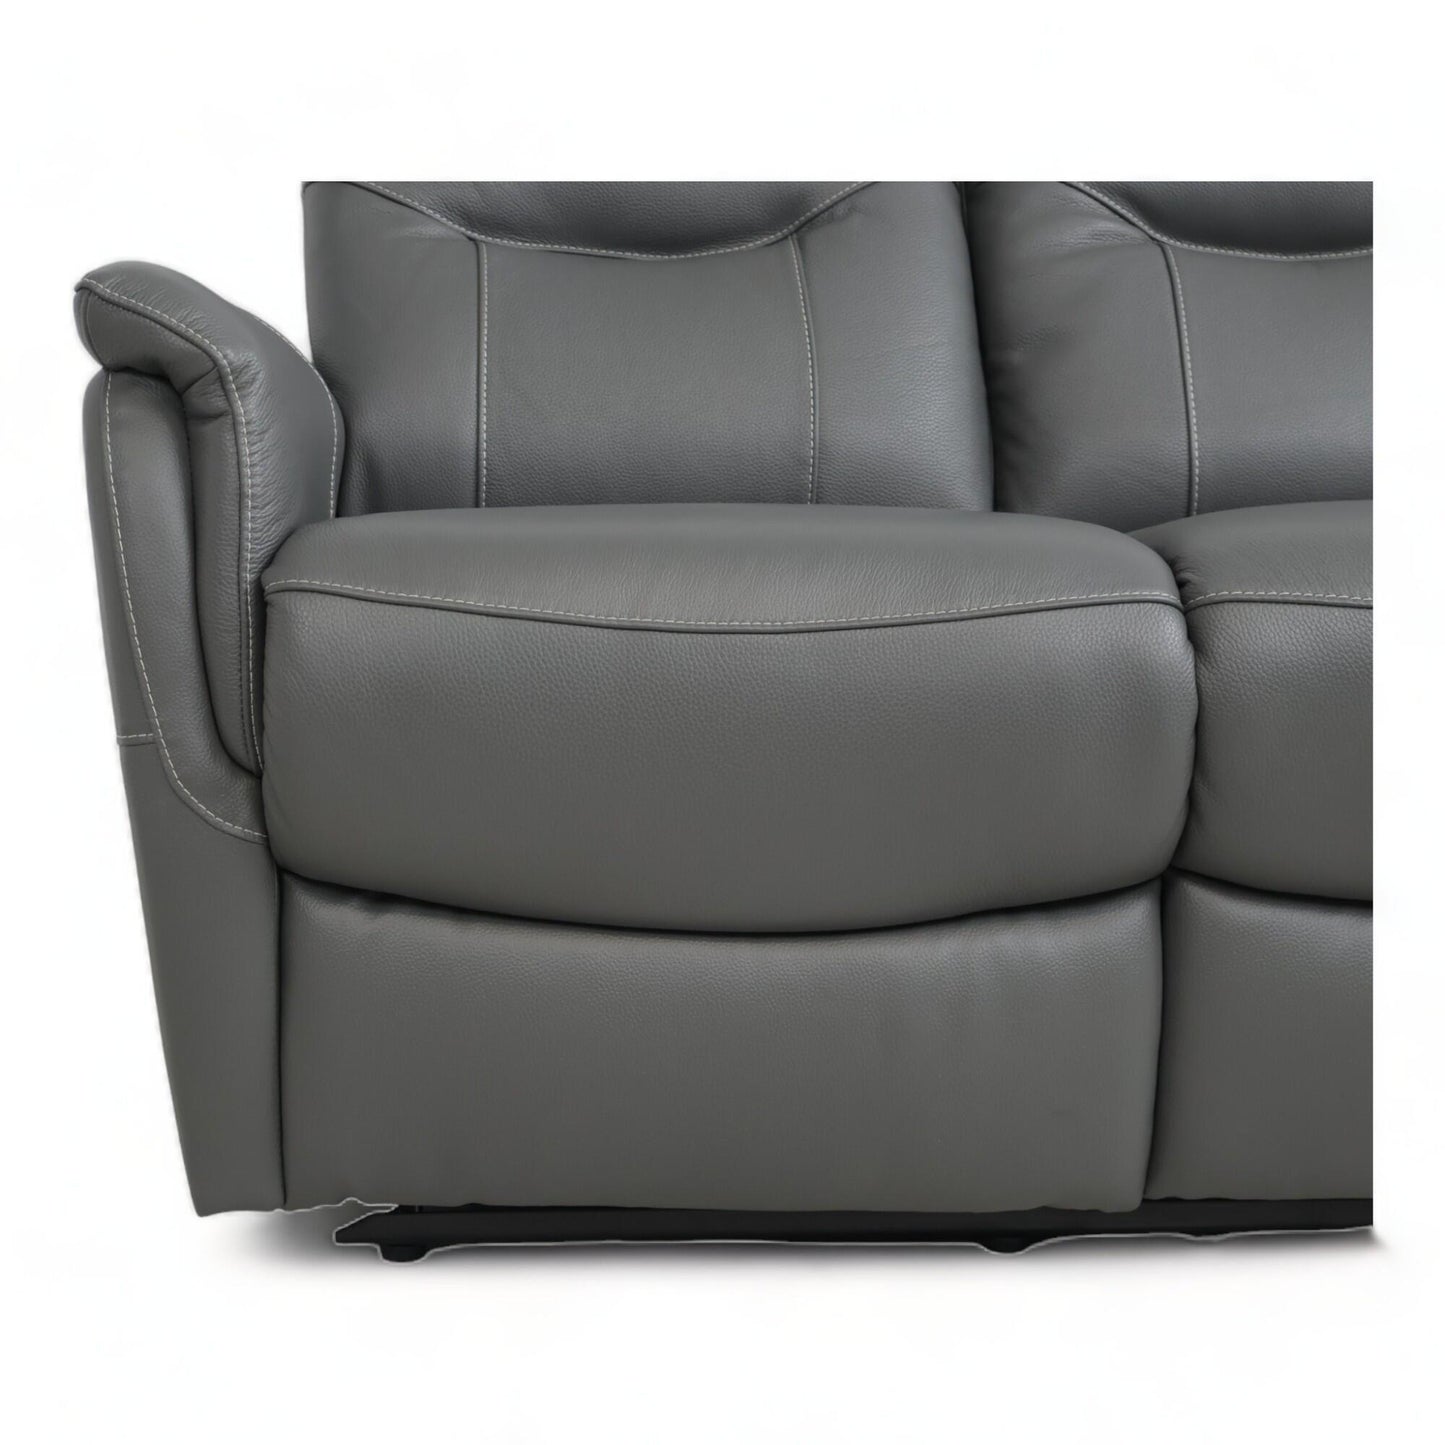 Ubrukt | Lys grå Orlando 3-seter recliner sofa